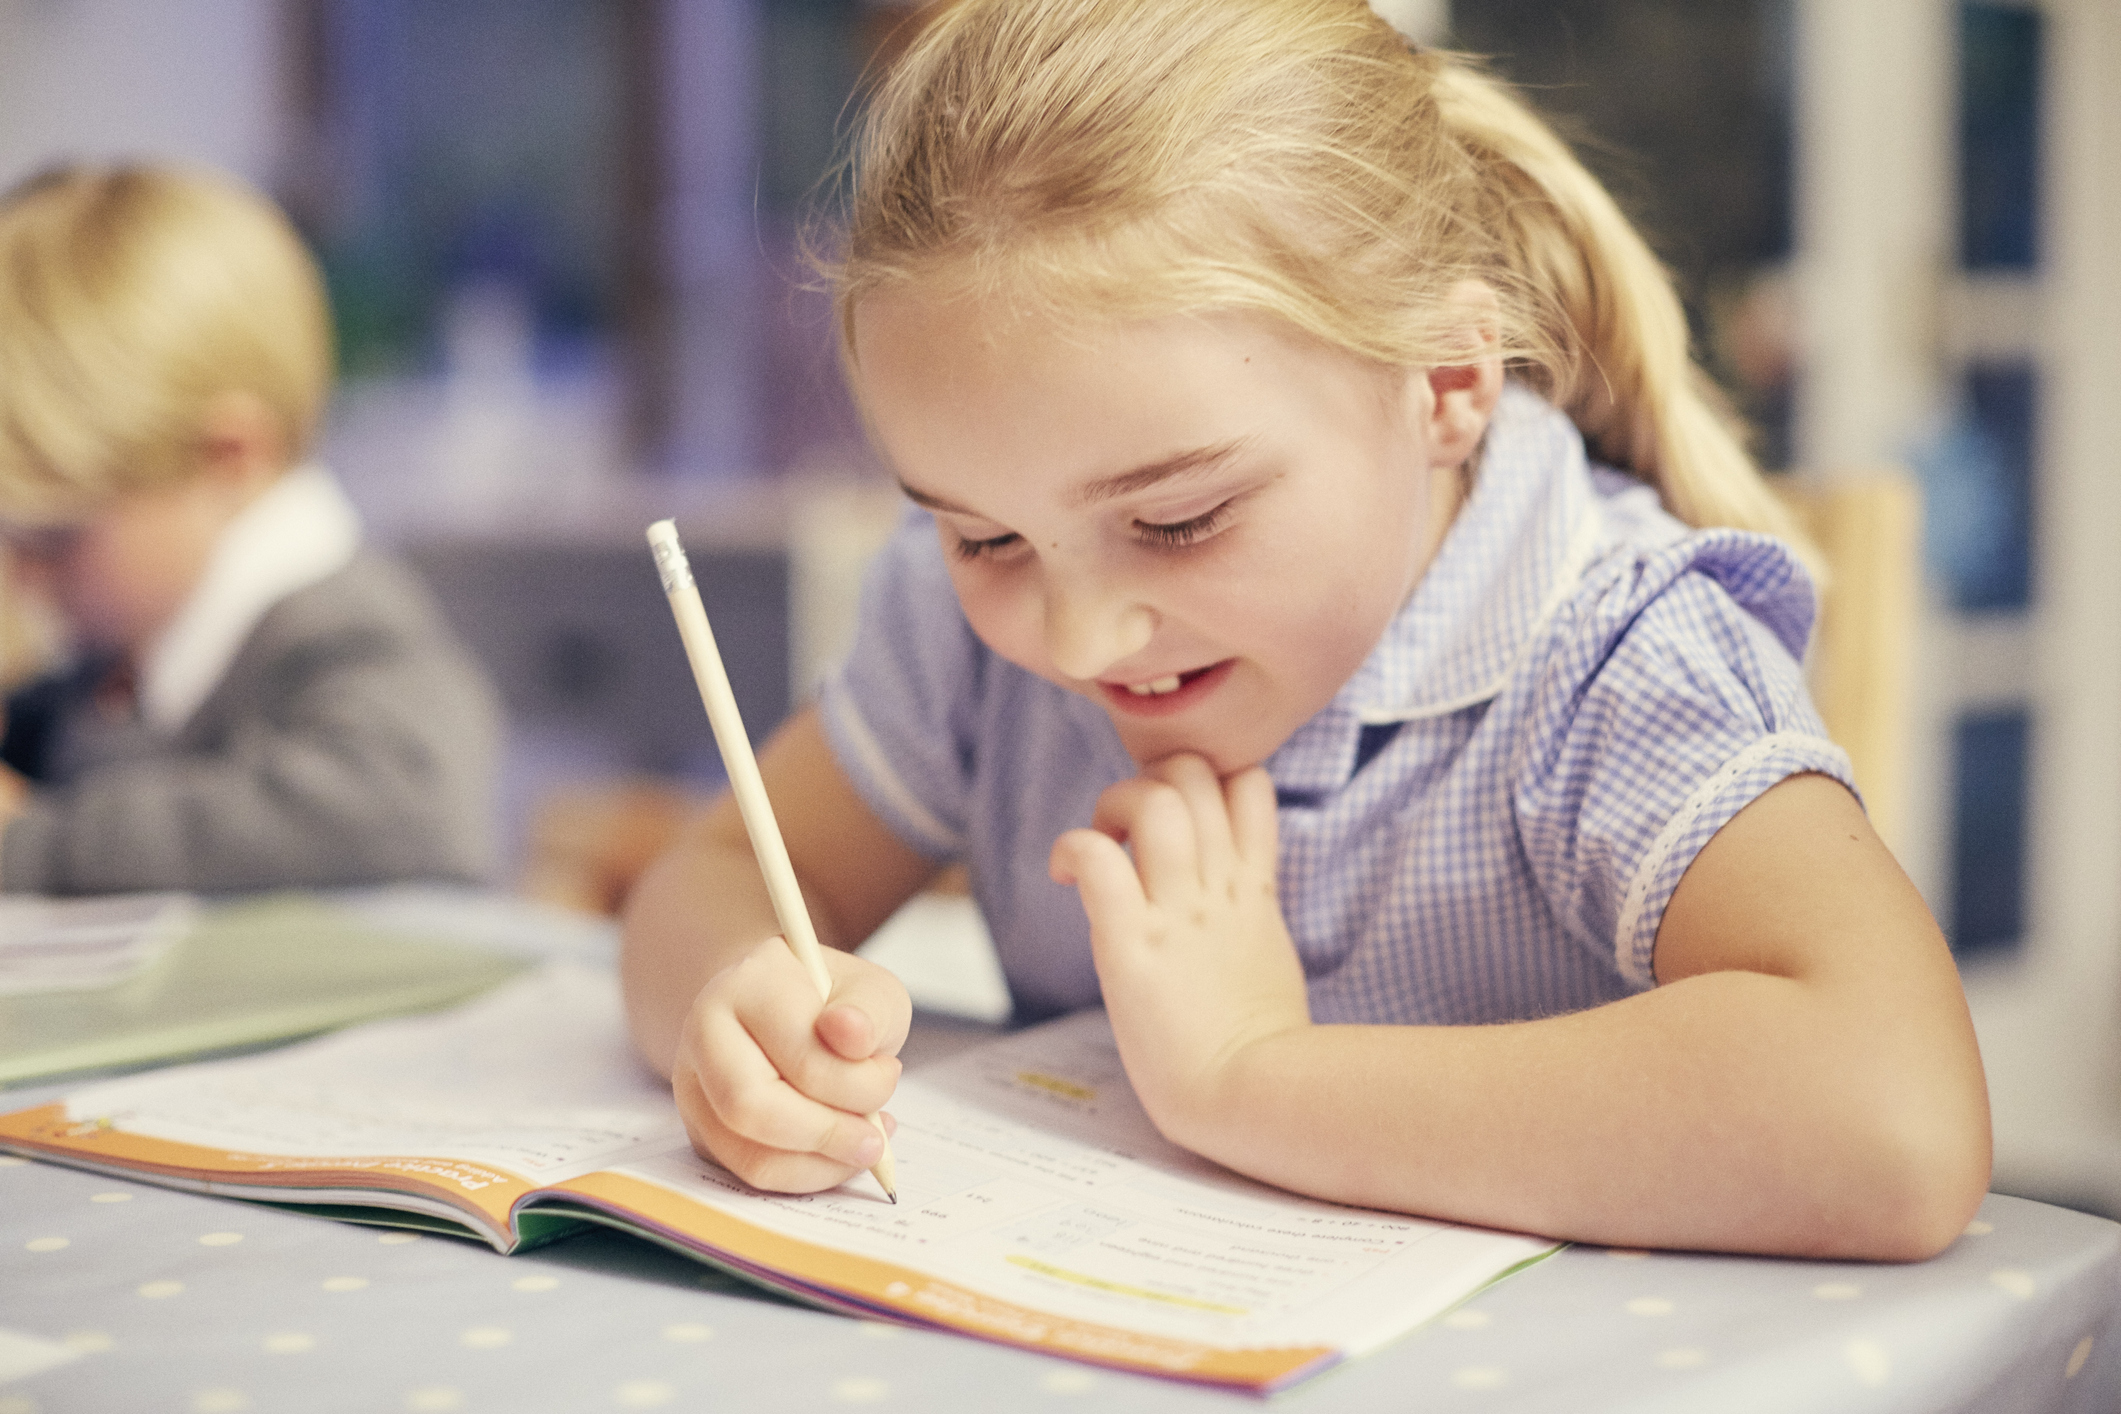 Крик души: почему в школах занижают оценки из-за почерка?